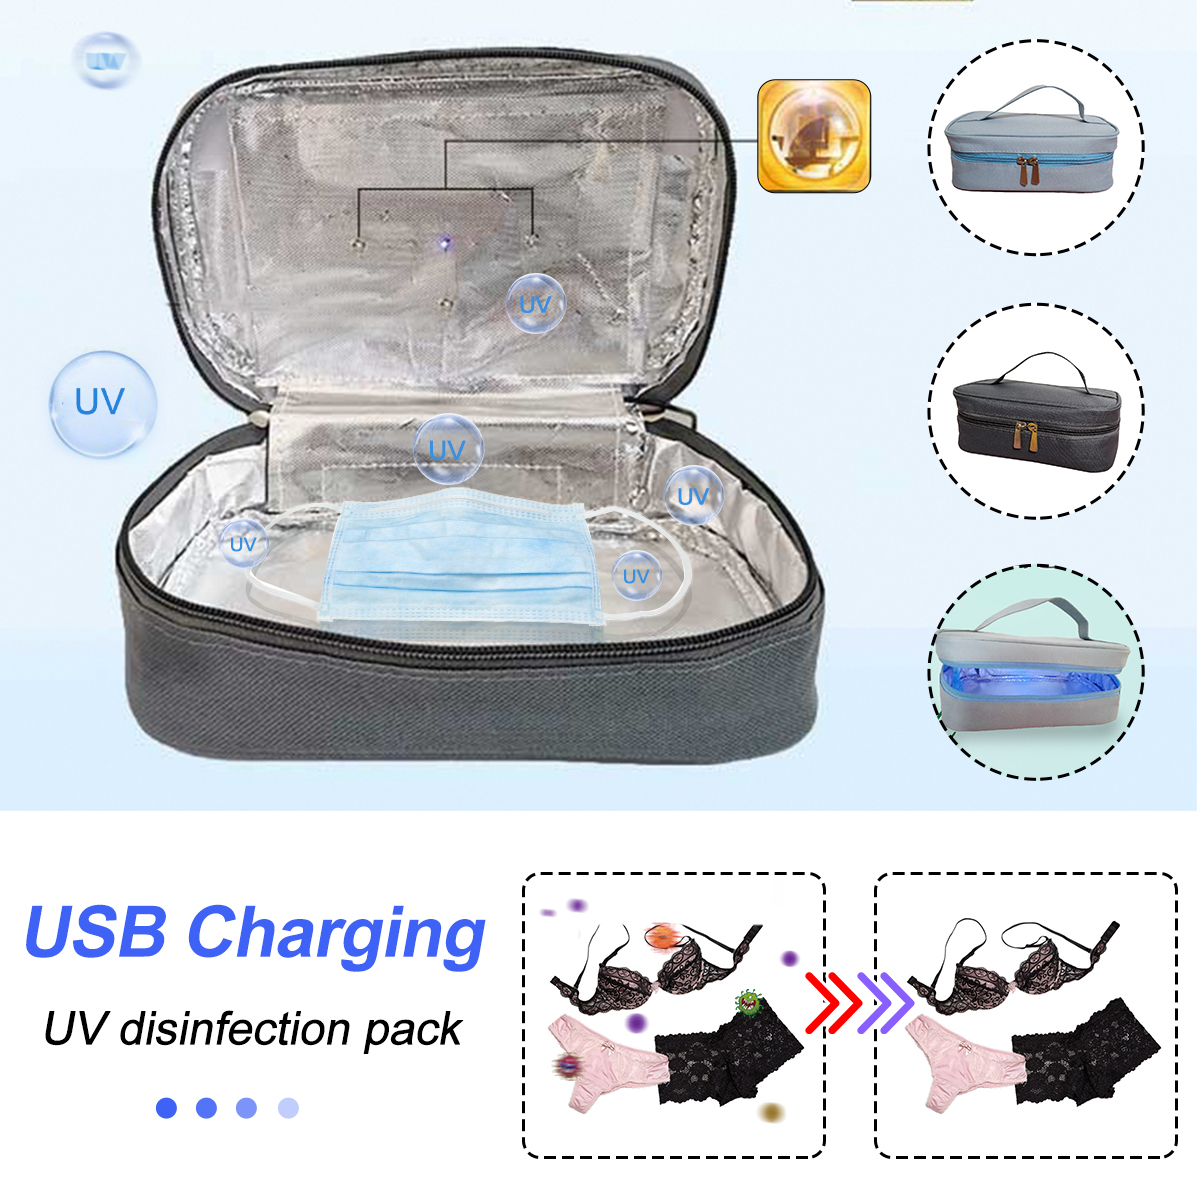 UV-Disinfection-Pack-Baby-Bottle-UnderwearMasks-Supplies-Sterilization-Box-1668082-2